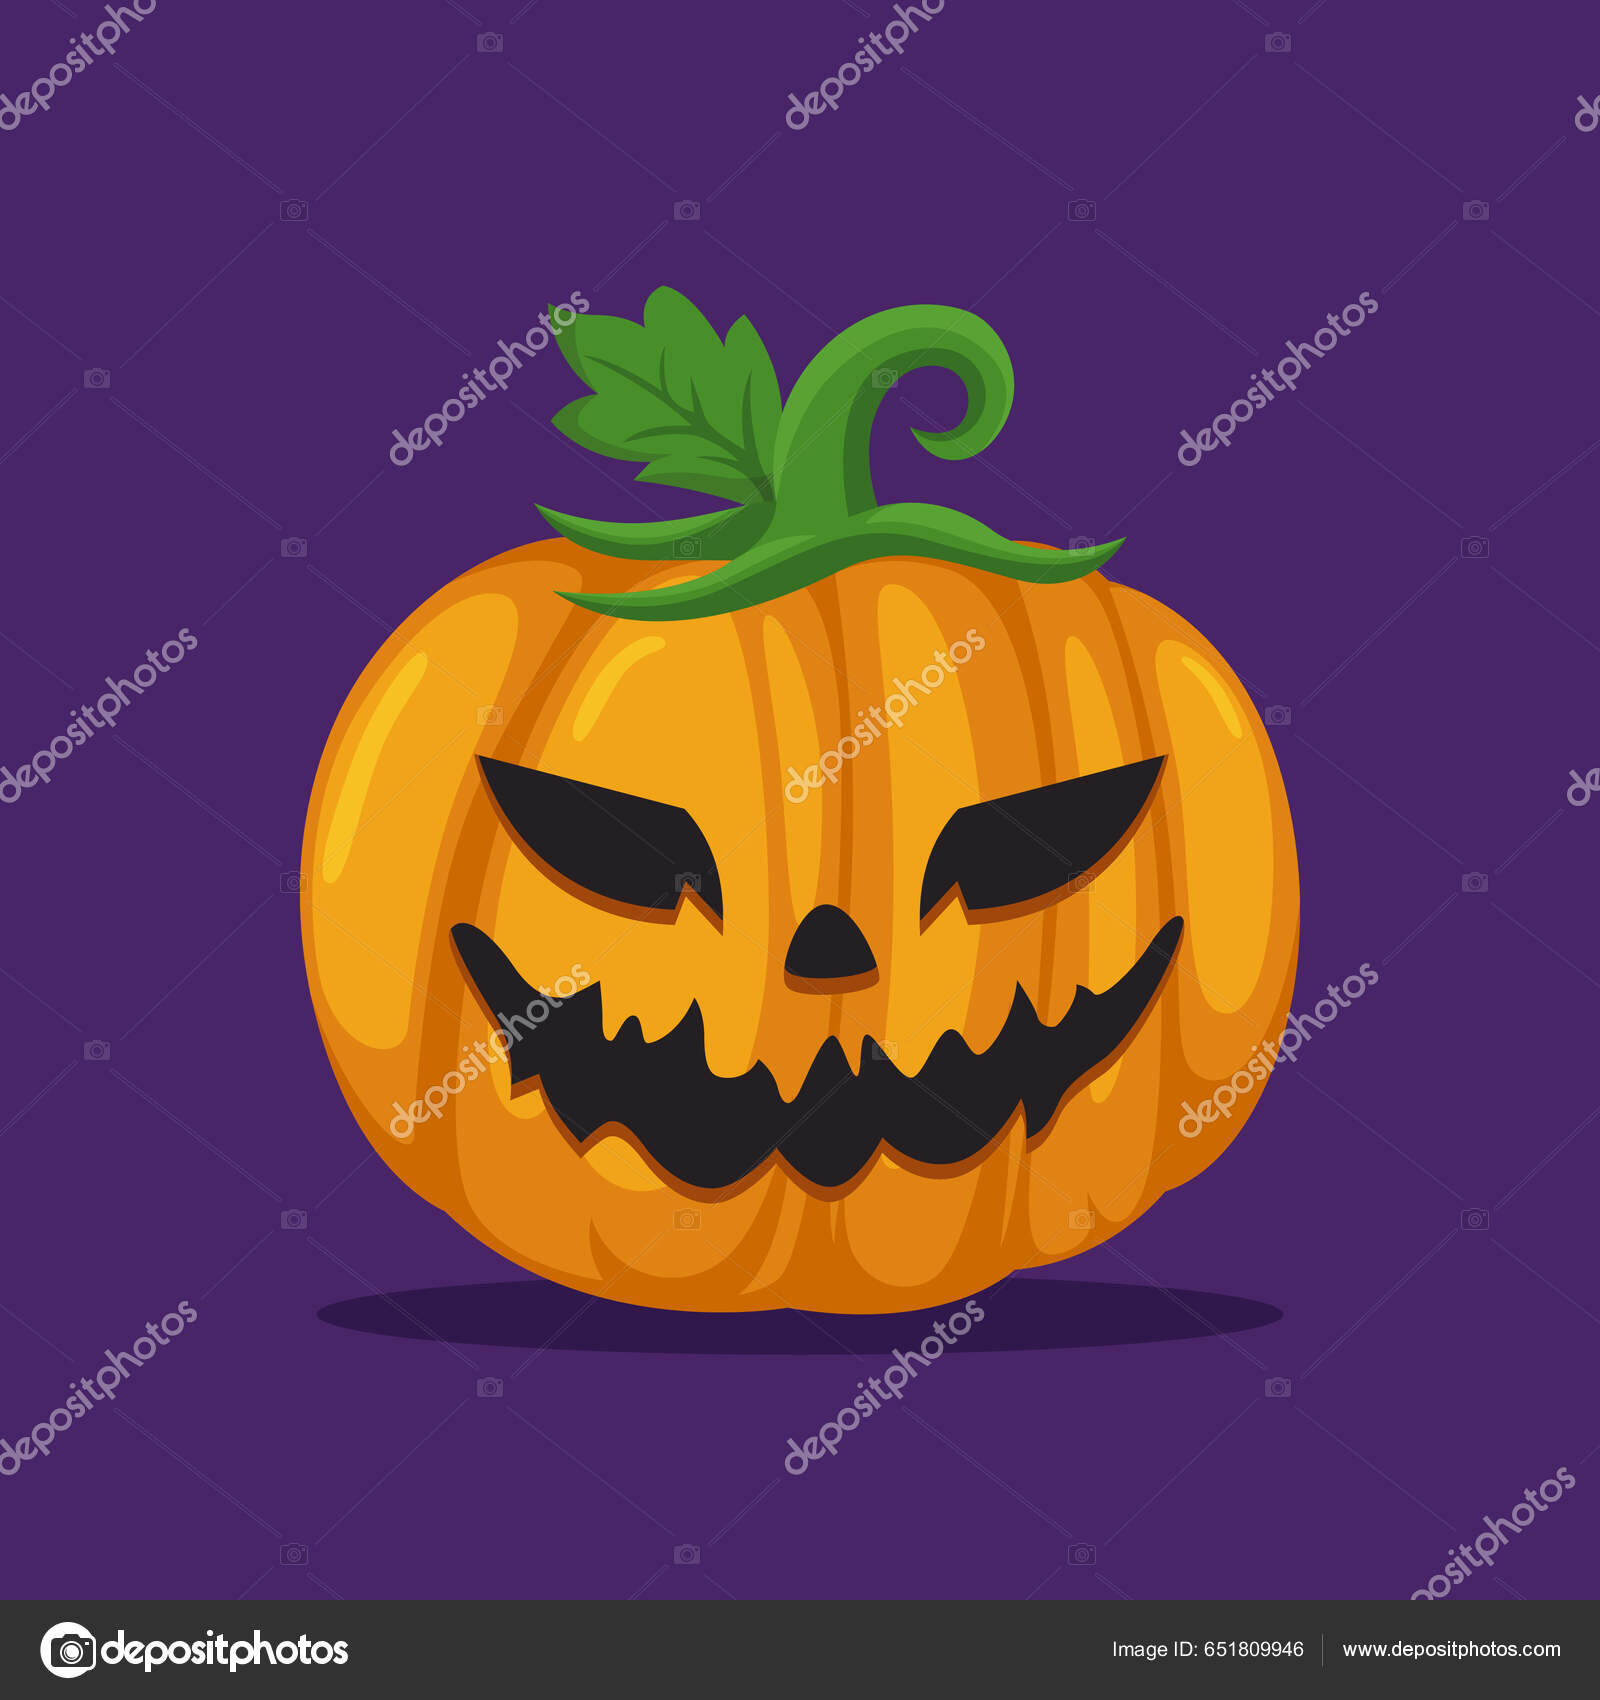 Cara Assustadora Da Abóbora Do Halloween. Vetor Royalty Free SVG